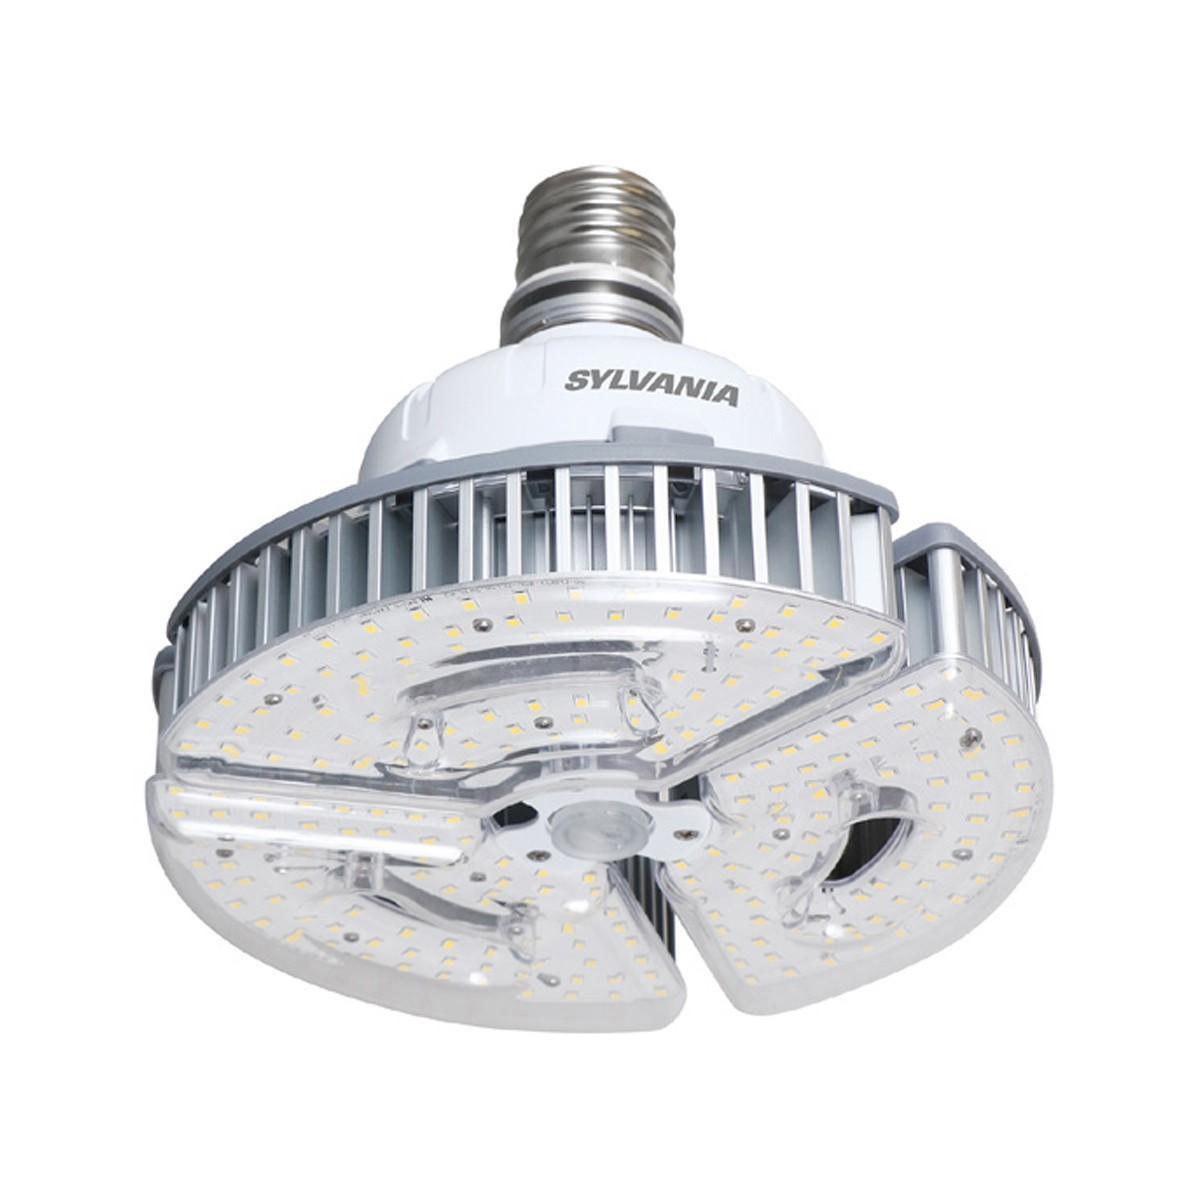 LED High Bay Retrofit Lamp, 120W, 16800 Lumens, 4000K, EX39 Mogul Extended Mogul Base, 120-277V